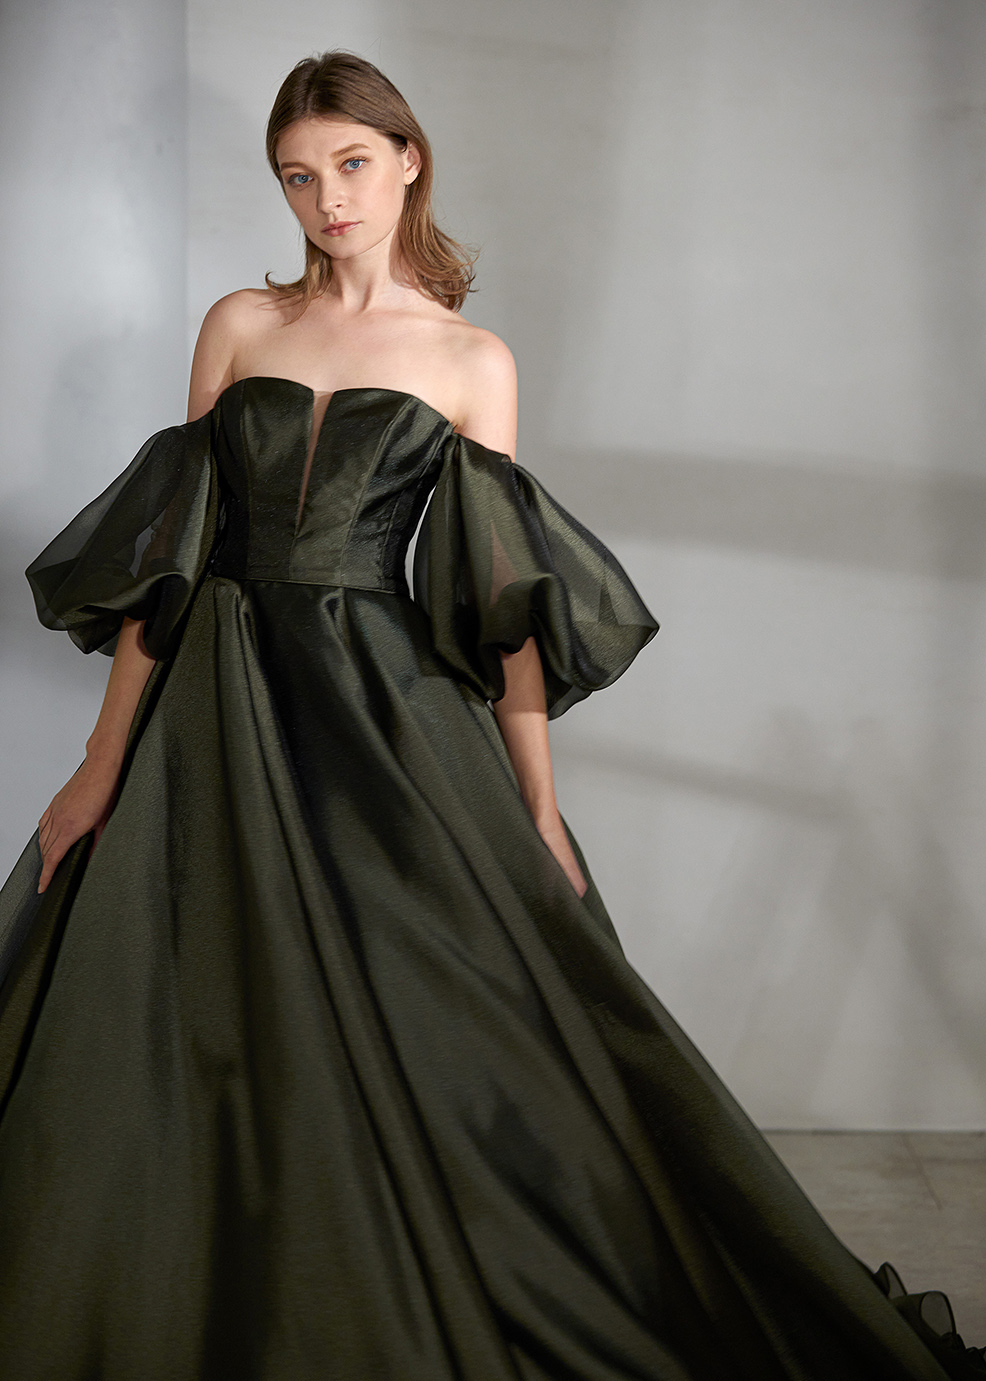 ウェディングドレス人気カラー 緑・グリーン＜2021年最旬人気カラー＞ | ウェディングドレス検索サイト | MATSUOのドレスウェディング